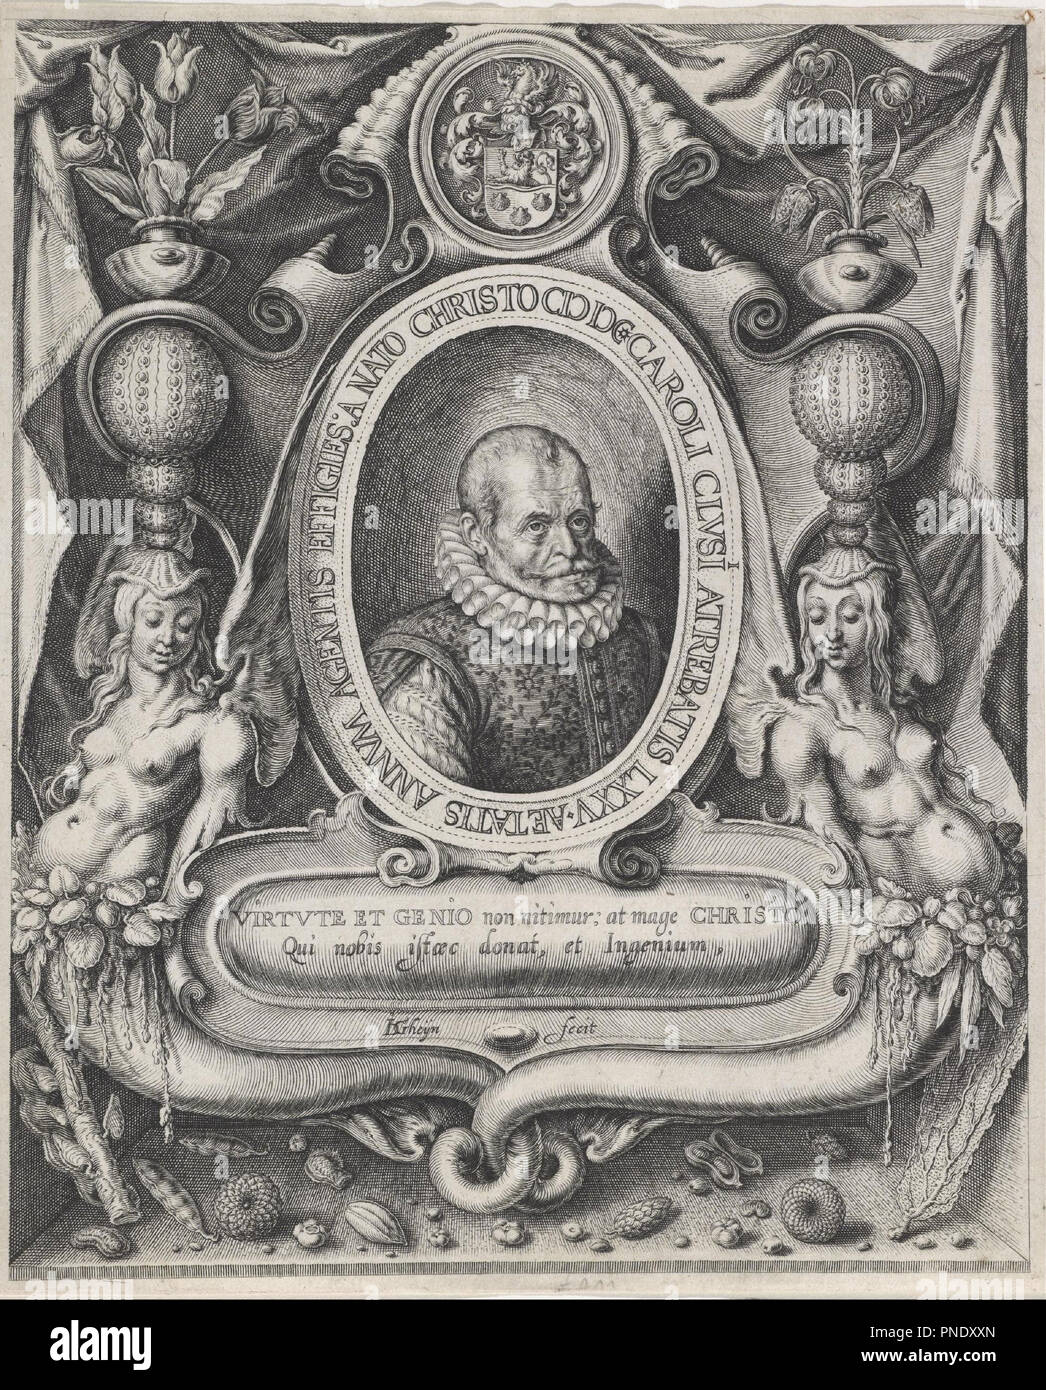 Portrait of Carolus Clusius (Charles de l'Écluse, 1526-1609). Date/Period: 1600/1601. Engraving on paper. Width: 18.1 cm. Height: 22.1 cm (plate). Author: Jacques de Gheyn II. Stock Photo